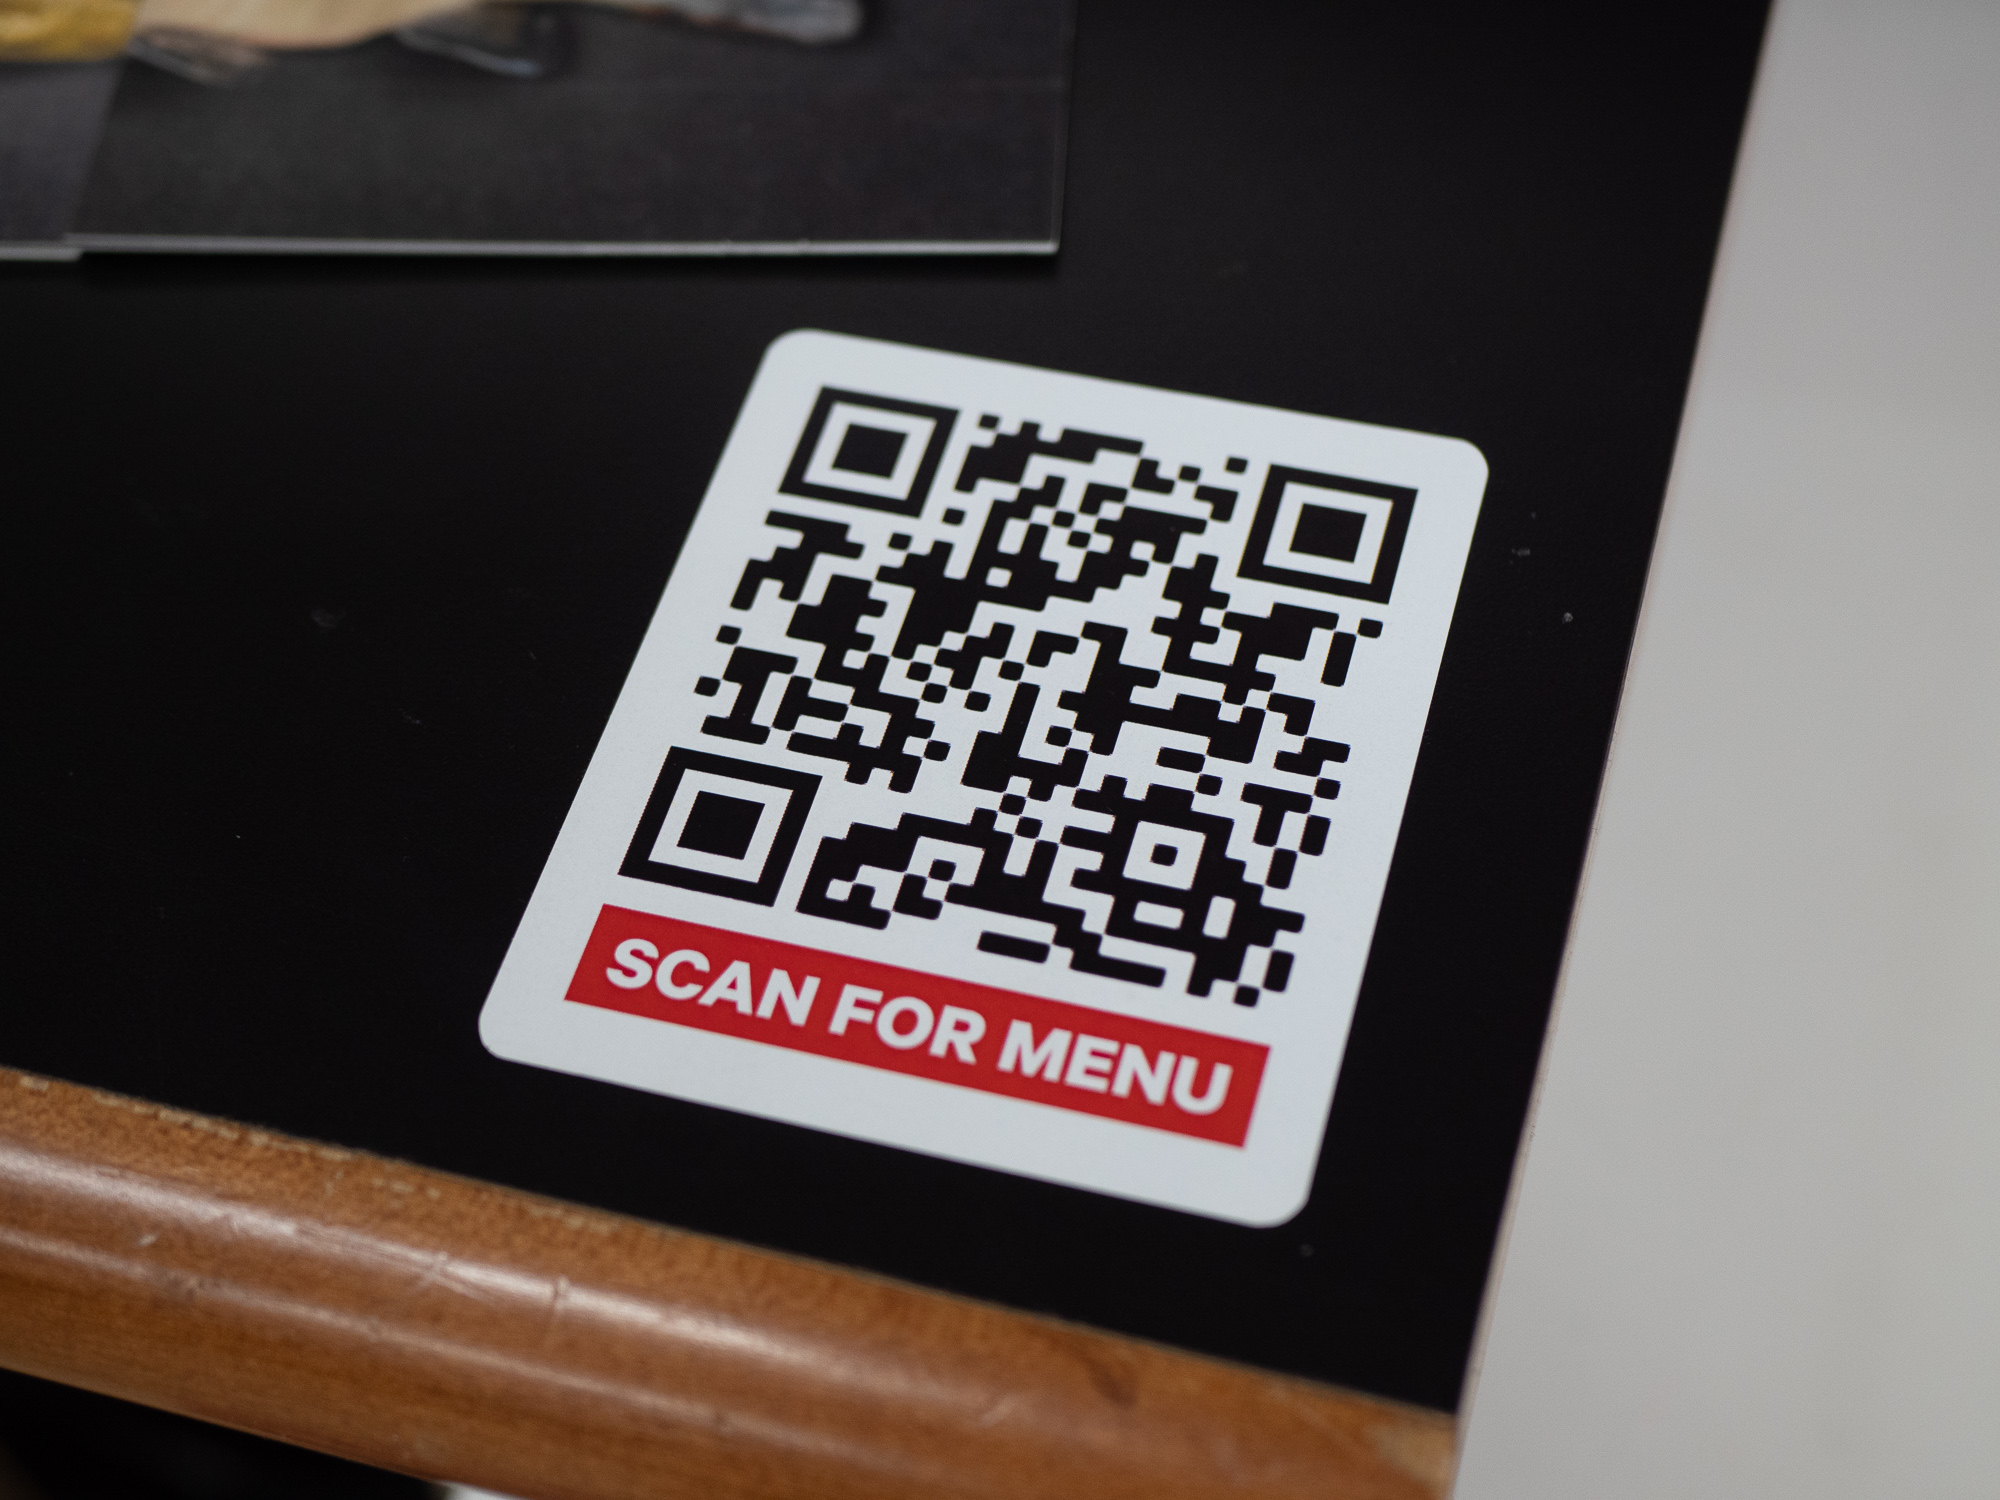 Qr код на пины. Наклейка с QR кодом. Наклейки для QR кодов. QR коды в ресторанах. Наклейка с ЙК кодом на стол.